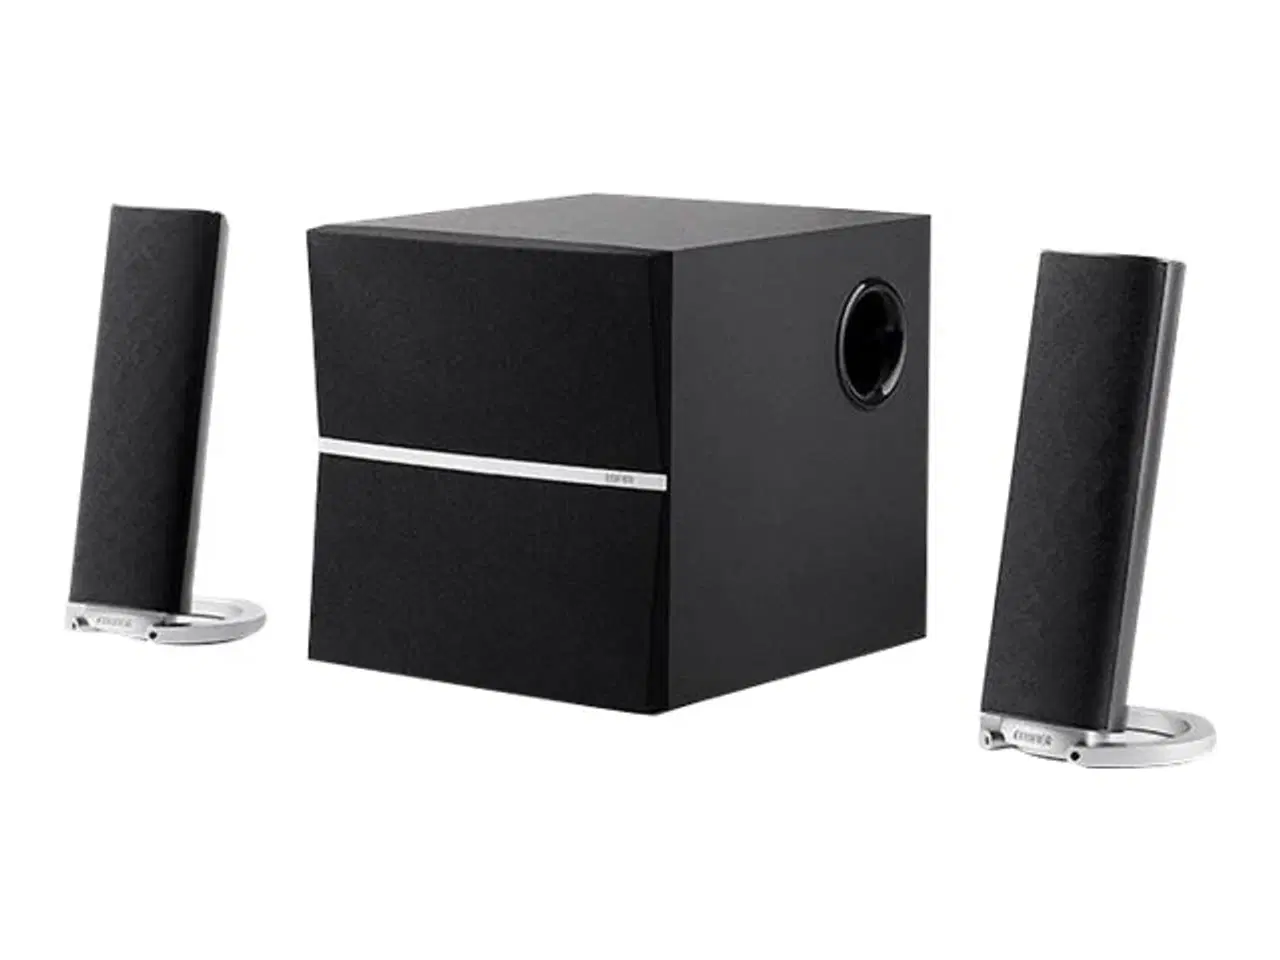 Billede 1 - M3280BT 2.1 Bluetooth speaker system with 6.5-inch